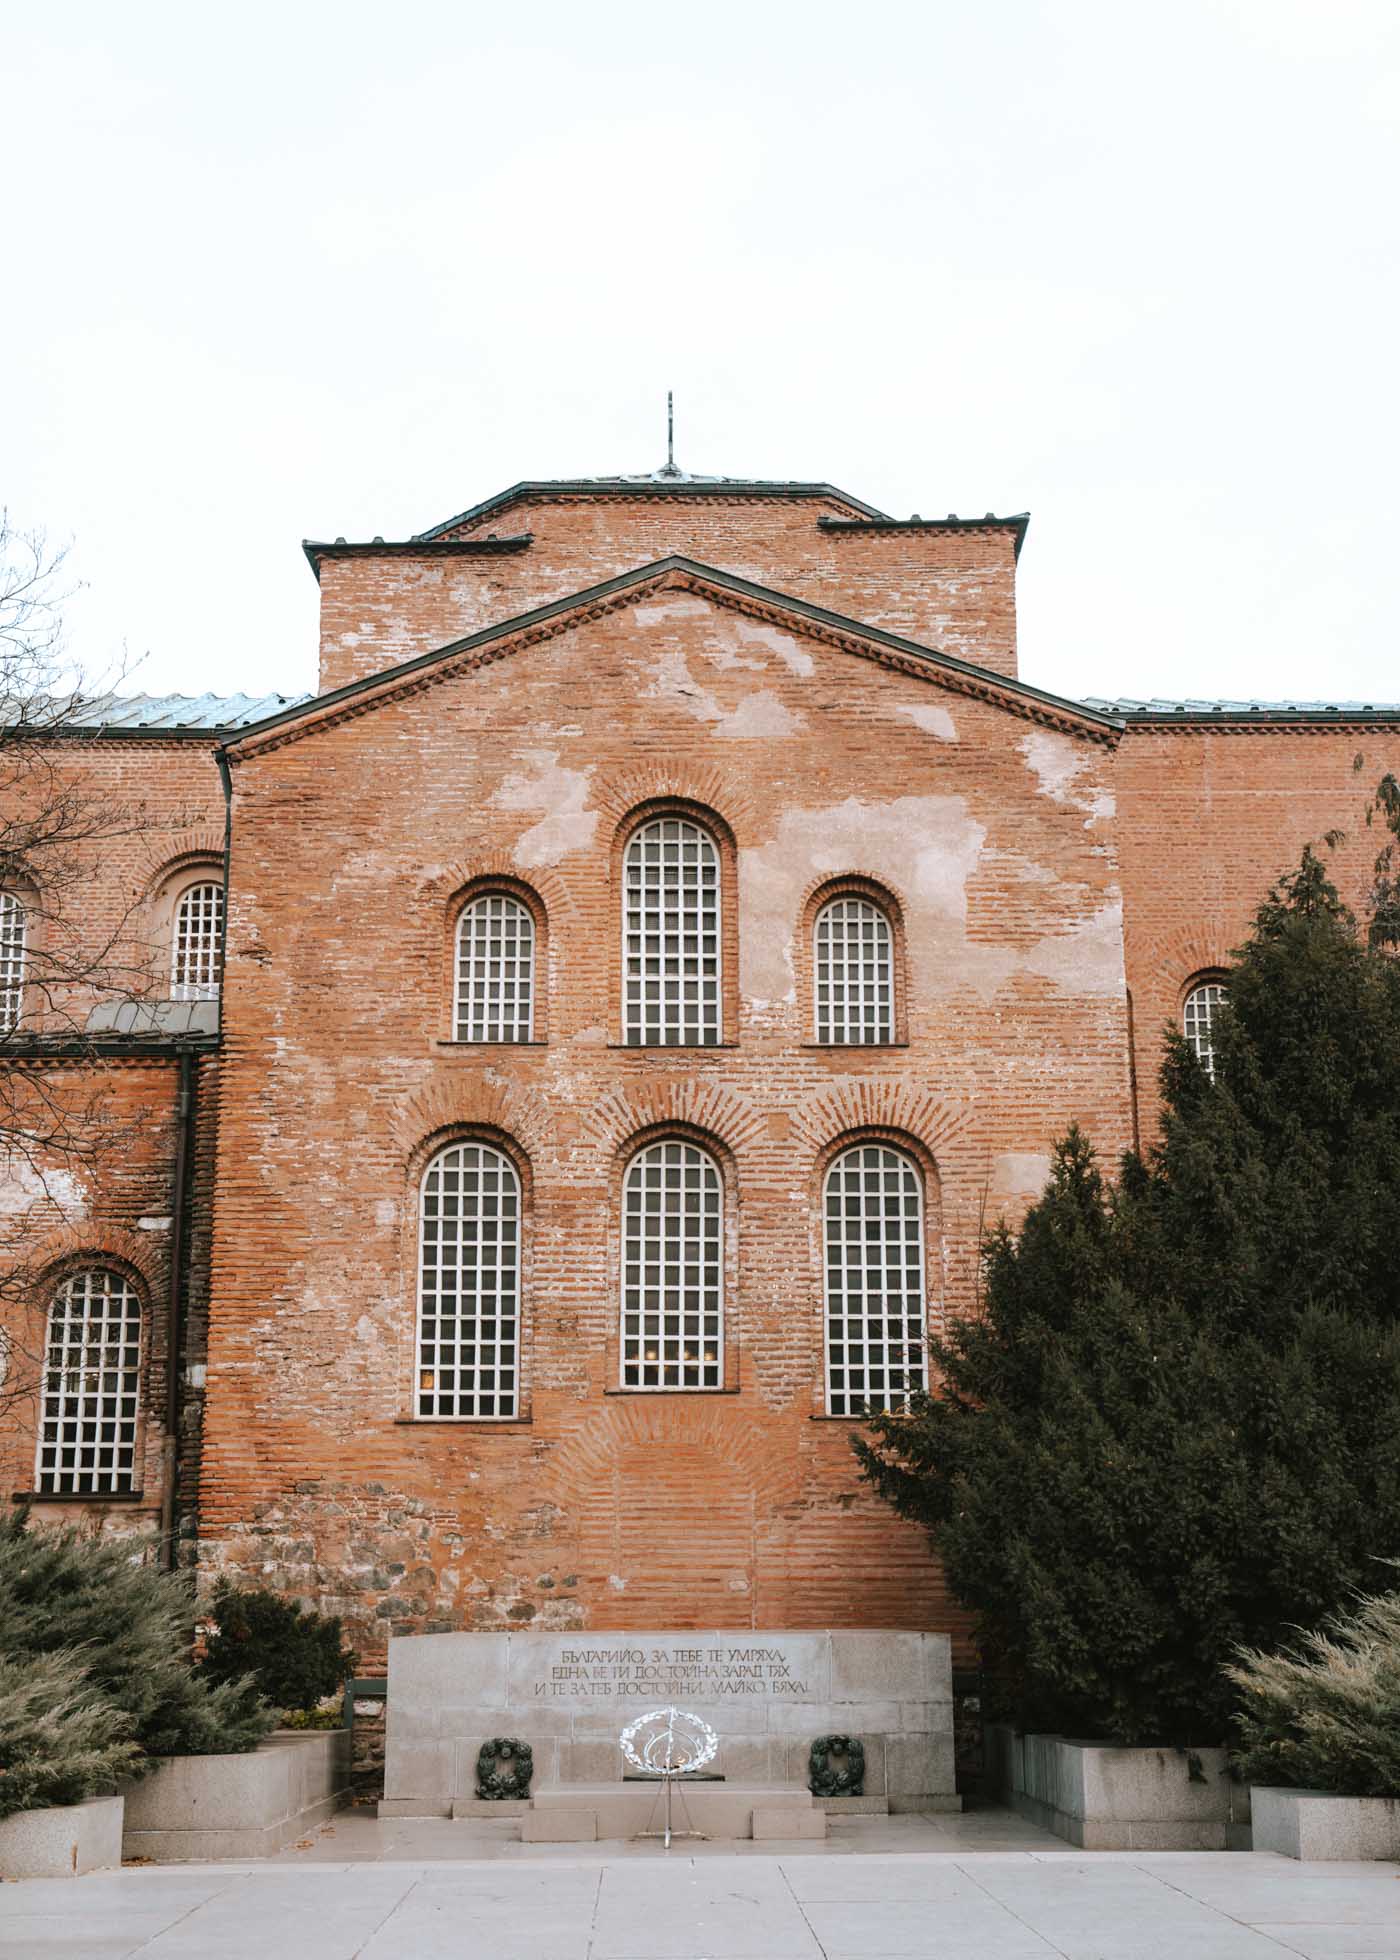 iglesia de estilo paleocristiano del siglo VI en Sofía